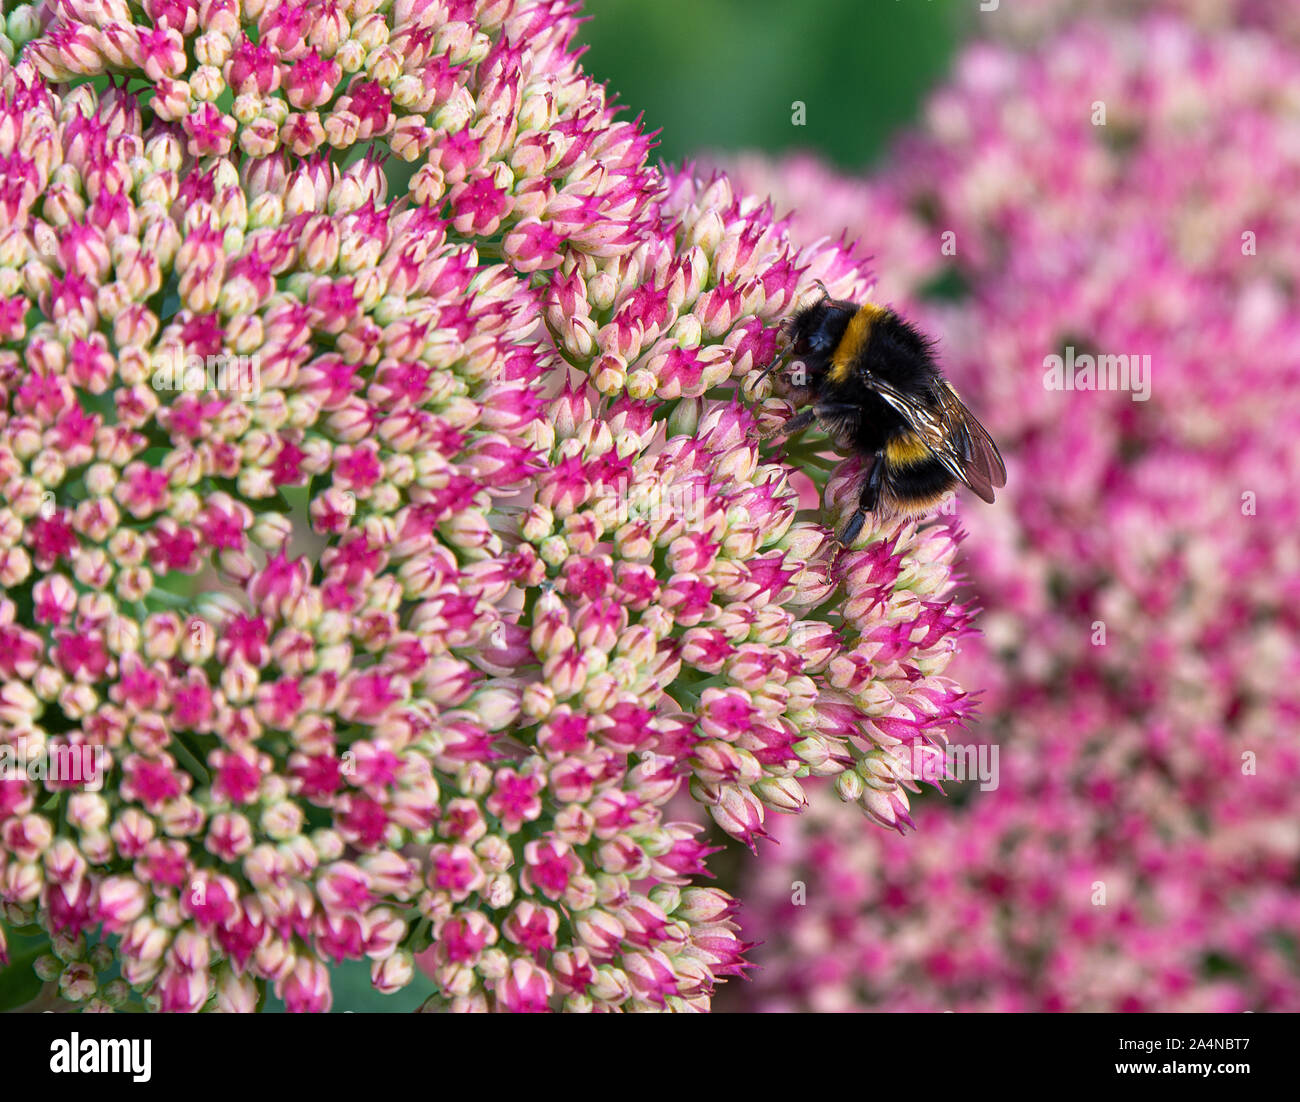 Une boumblebee à queue de buf se nourrissage sur Nectar sur une joie d'automne de tête de fleur de Sedum dans un jardin à Sawdon North Yorkshire Angleterre Royaume-Uni Banque D'Images